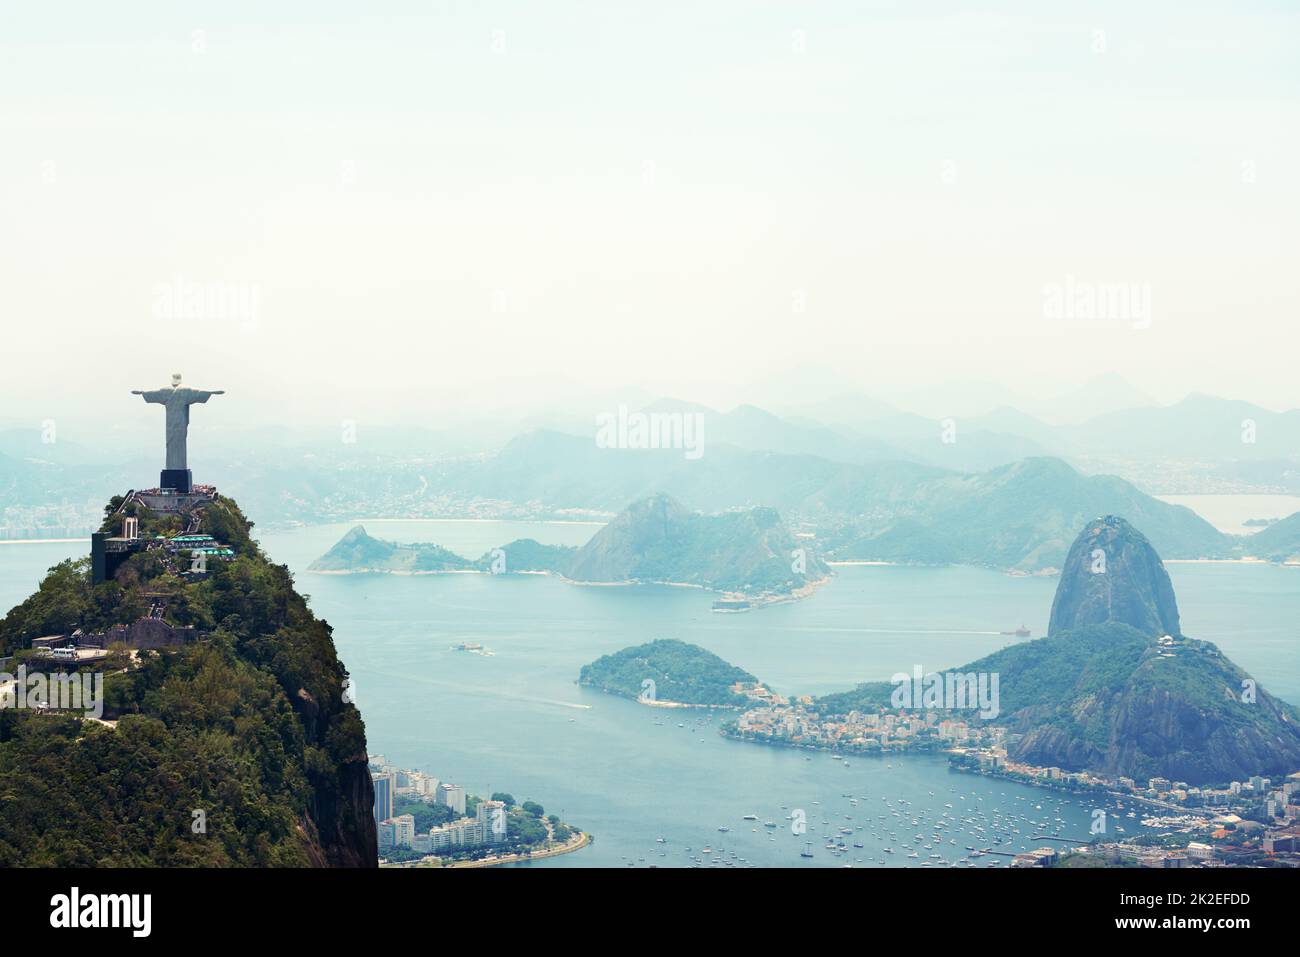 Es ist das Symbol des brasilianischen Christentums. Aufnahme des Christusdenkmals in Rio de Janeiro, Brasilien. Stockfoto